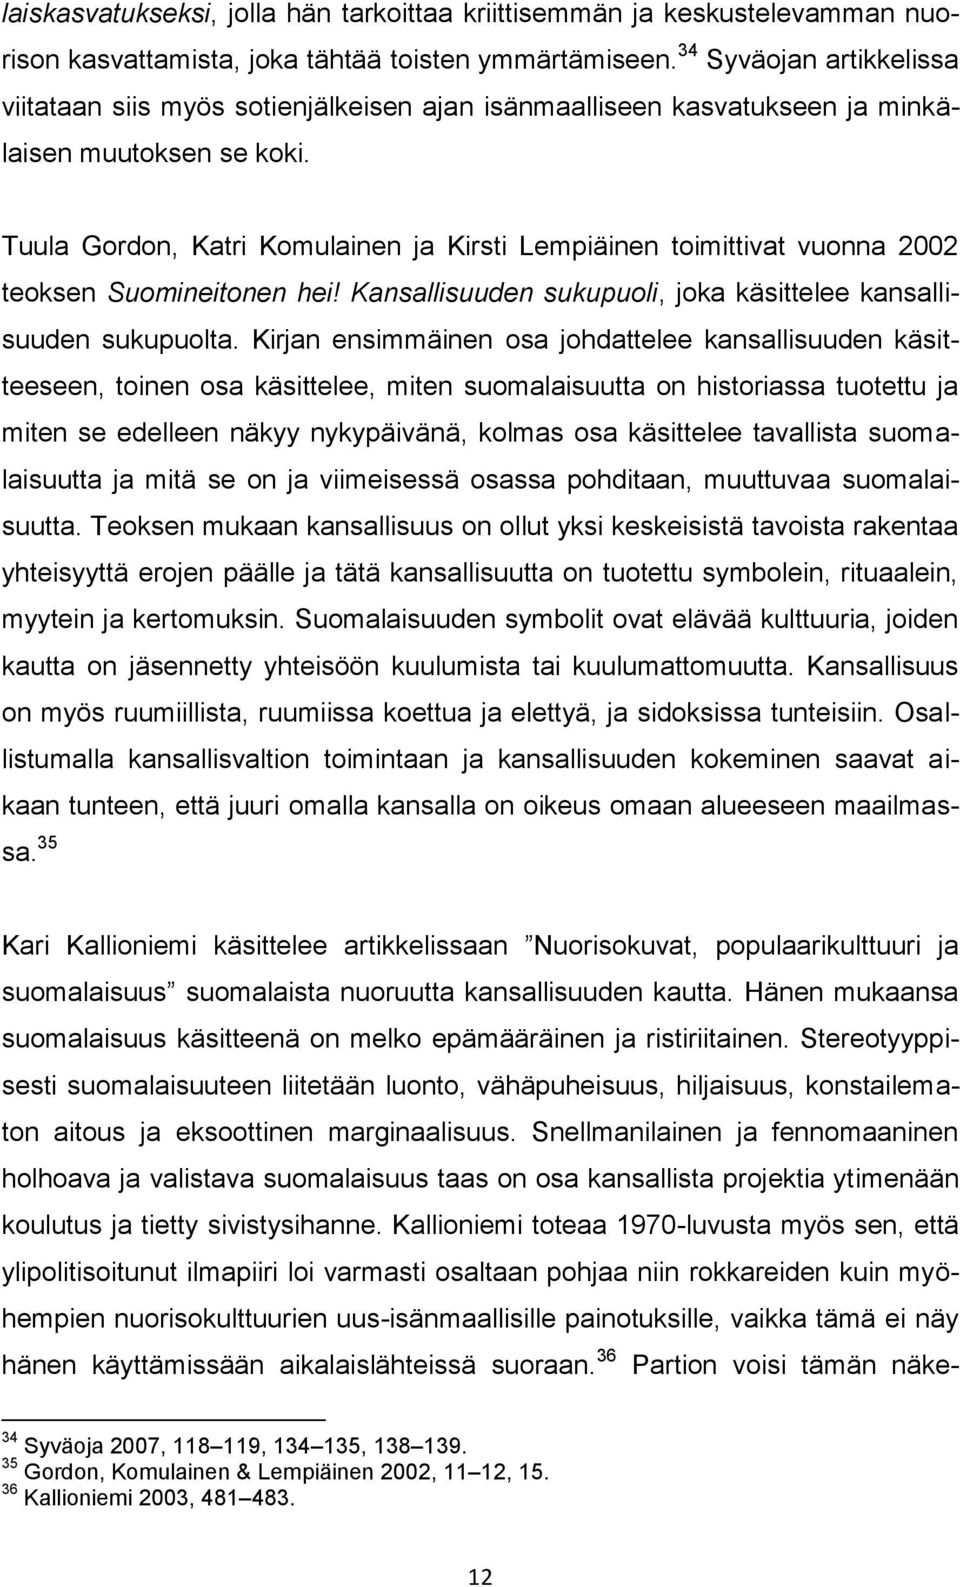 Tuula Gordon, Katri Komulainen ja Kirsti Lempiäinen toimittivat vuonna 2002 teoksen Suomineitonen hei! Kansallisuuden sukupuoli, joka käsittelee kansallisuuden sukupuolta.